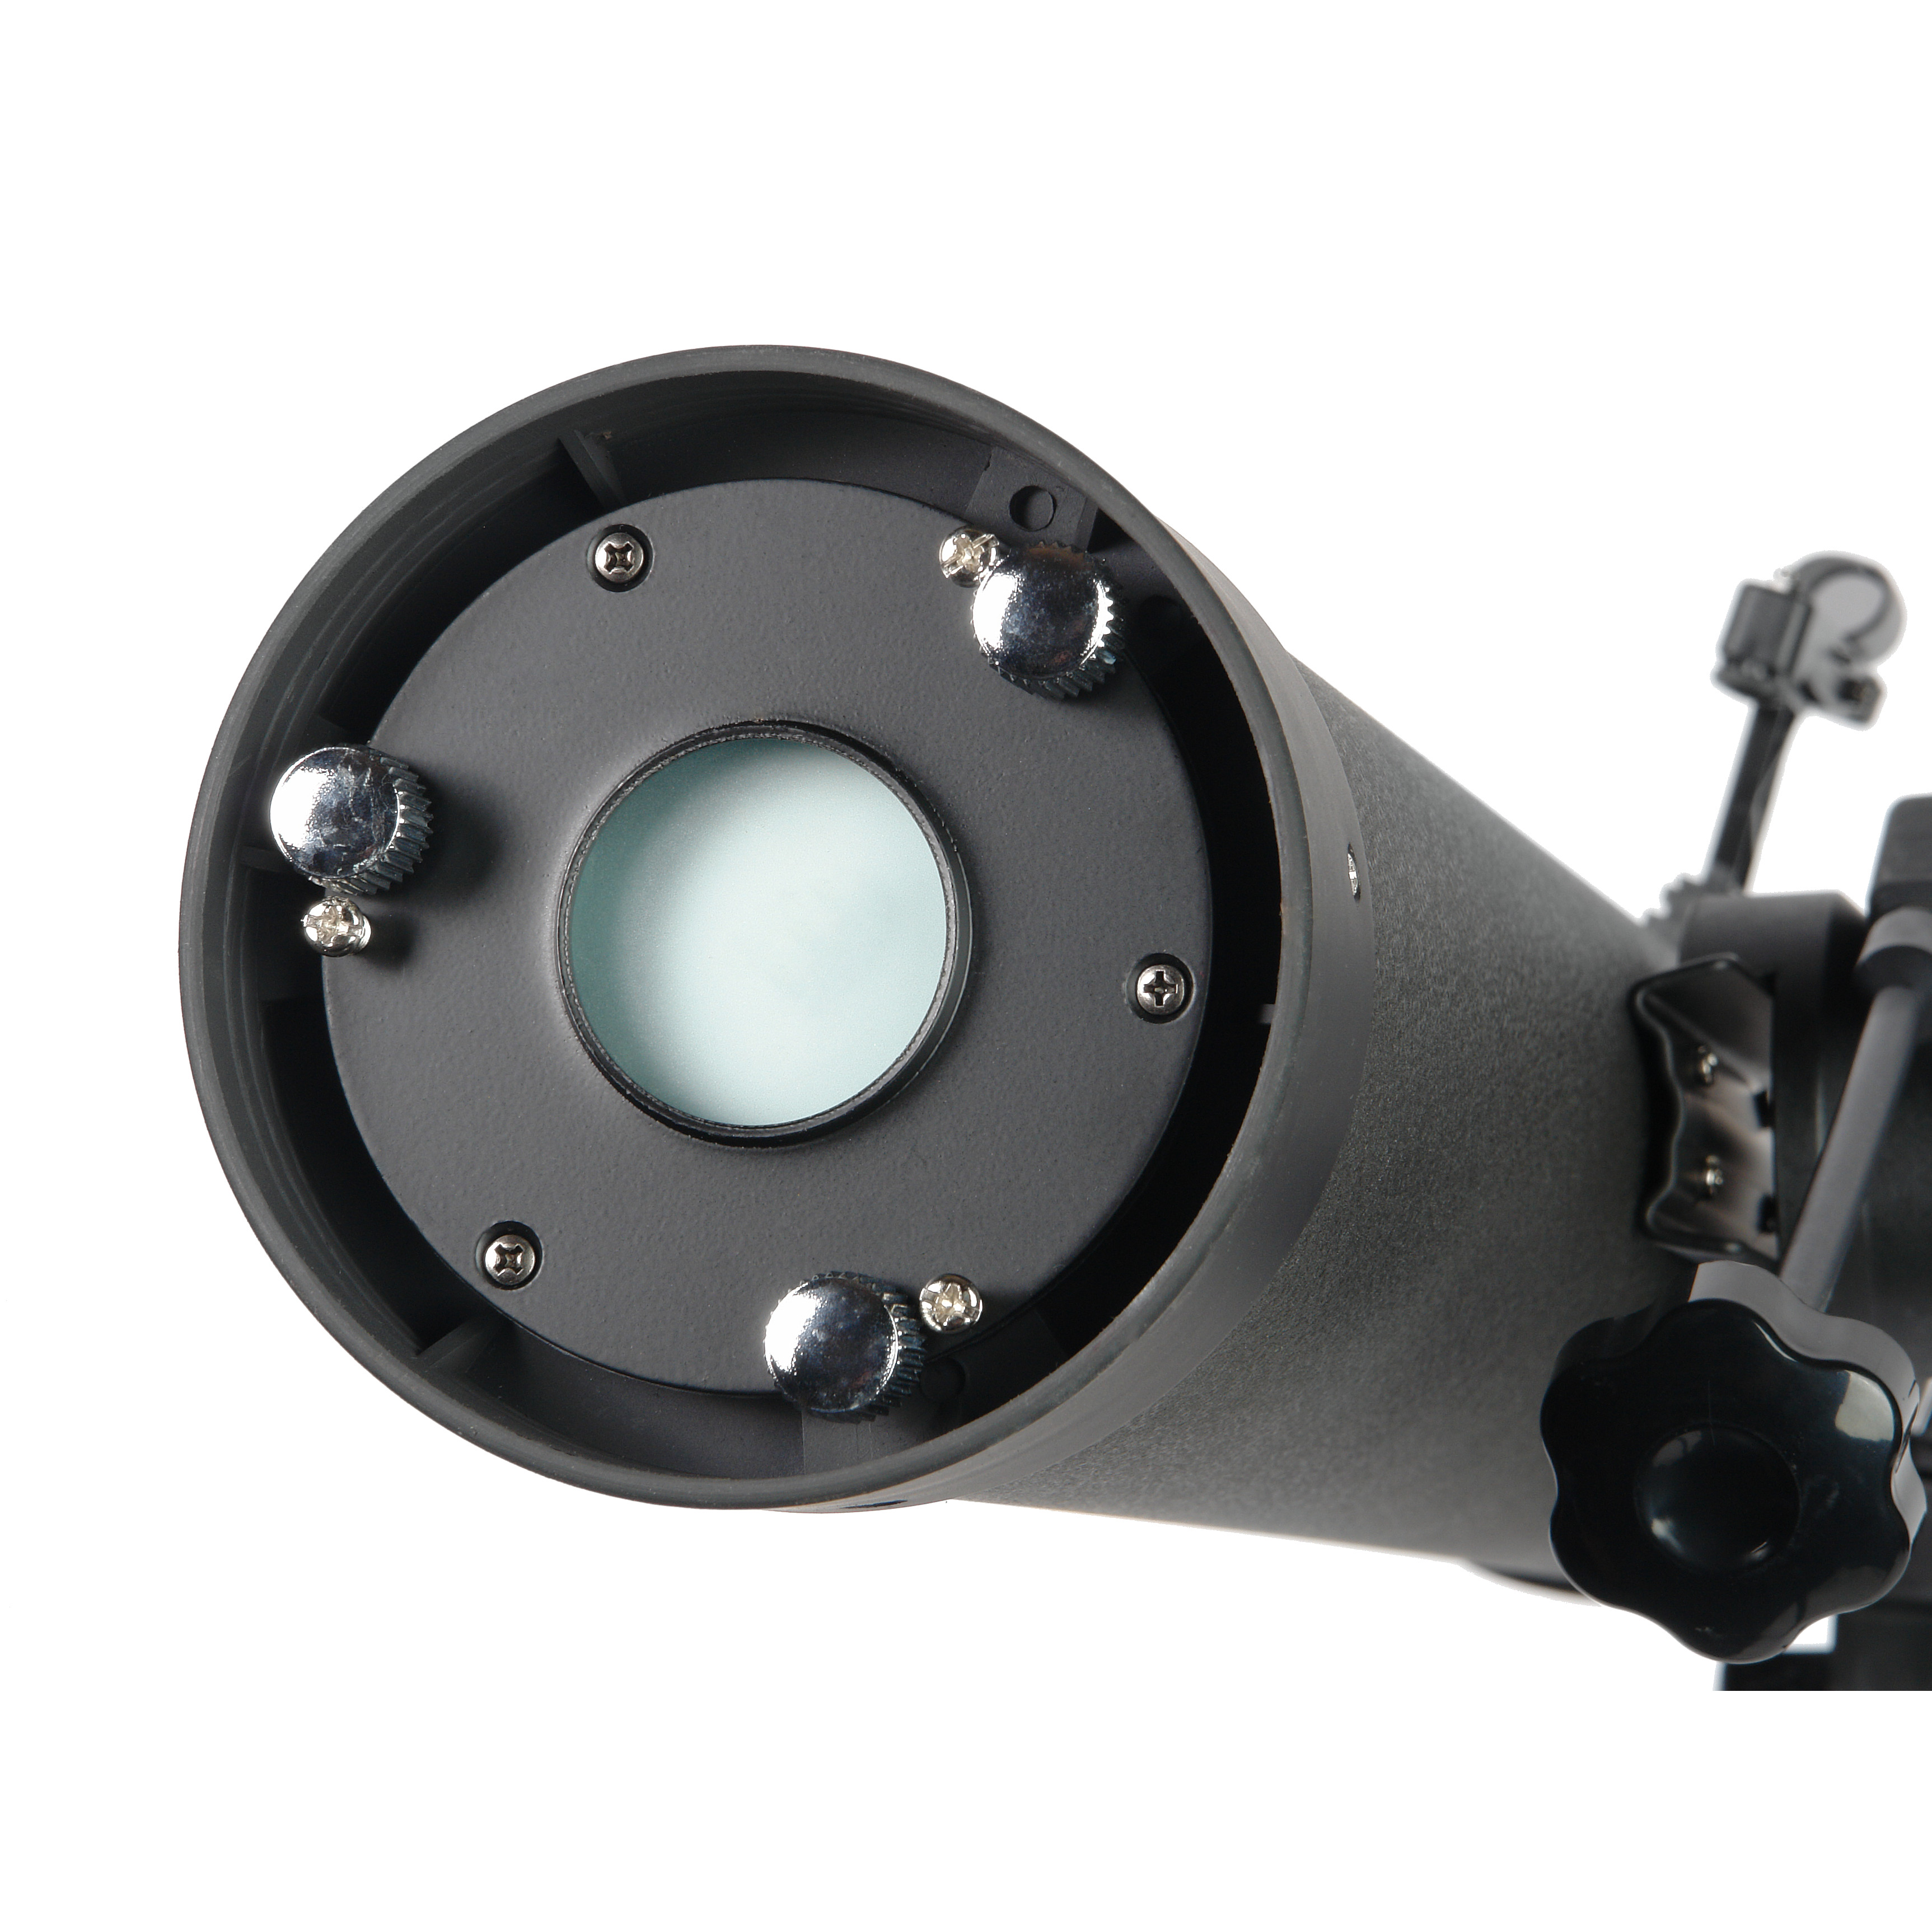 Телескоп-рефлектор Veber NewStar MT80080 AZII купить по оптимальной цене,  доставка по России, гарантия качества